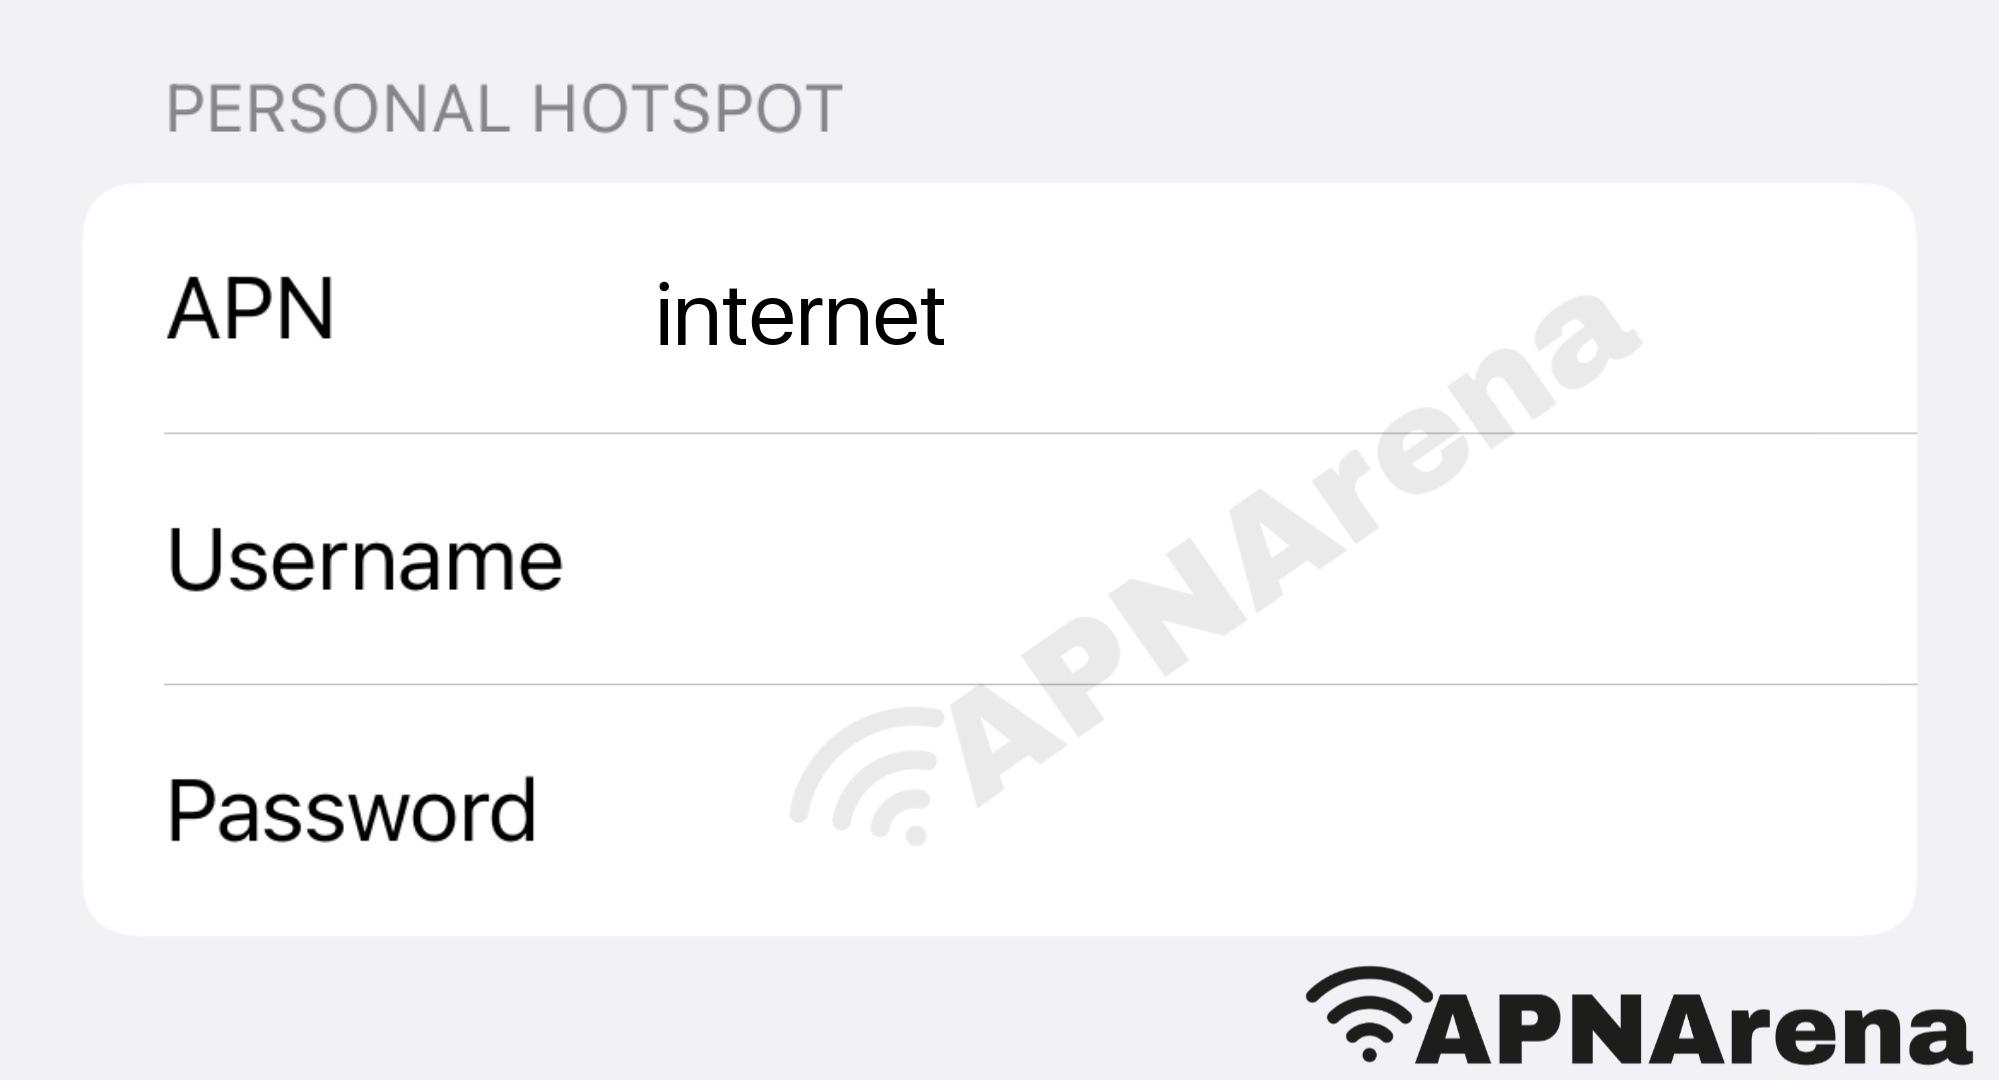 Airtel Malawi (Zain) Personal Hotspot Settings for iPhone